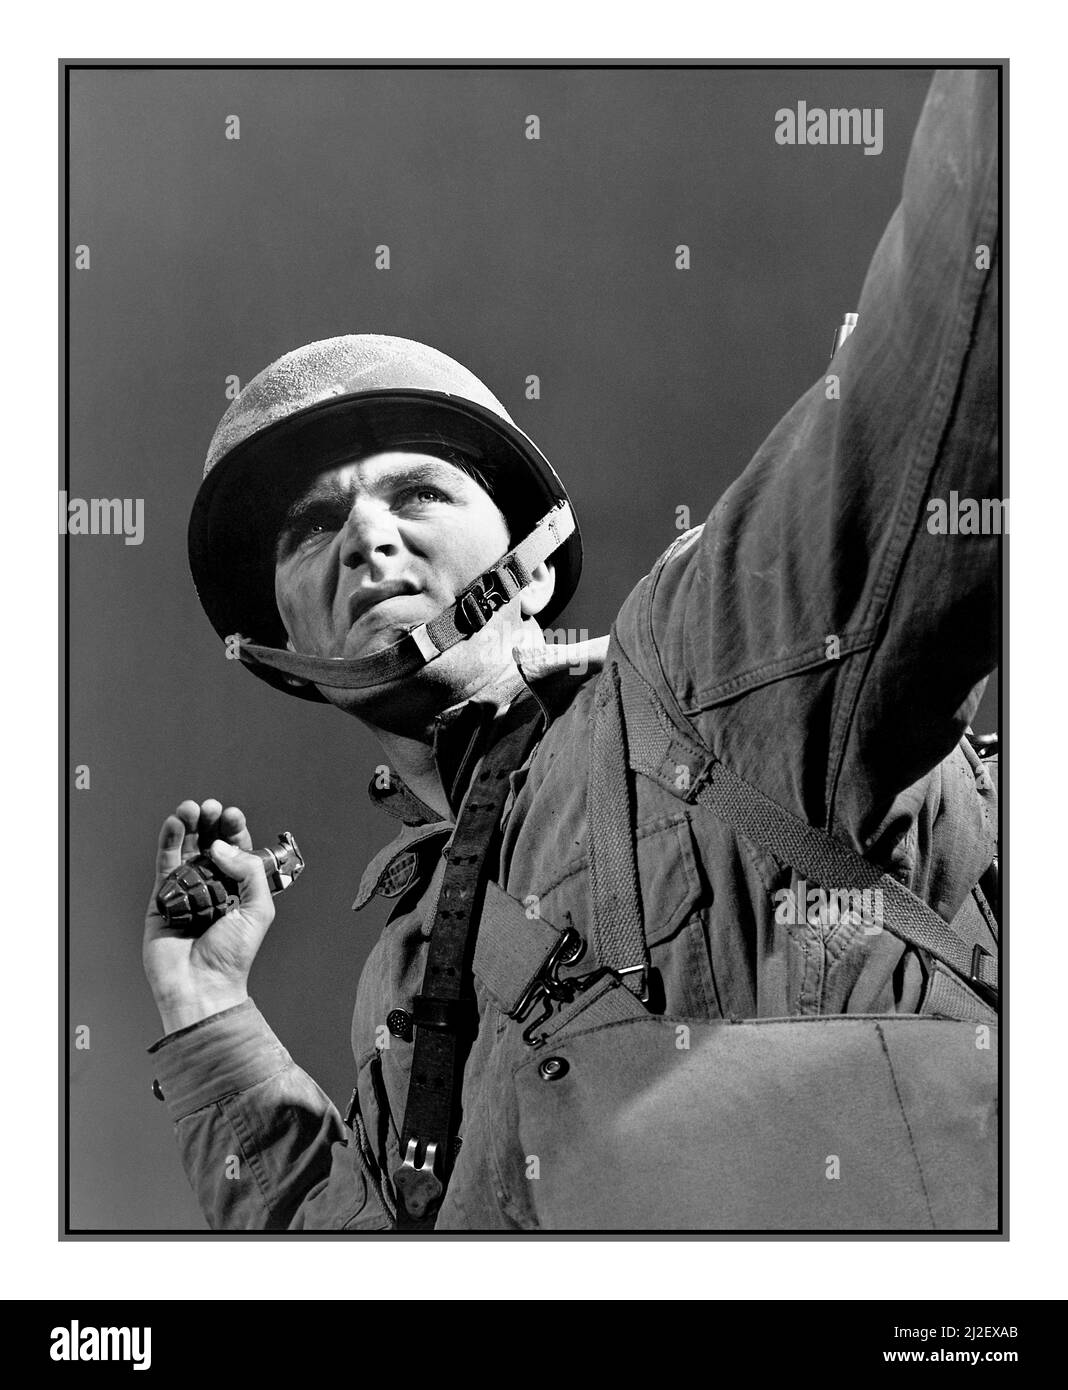 GRANATA LANCIO WW2 American Propaganda immagine 'Un pacchetto per Hitler', Belvoir Virginia. Lanciatori di granate. Un fantino in formazione a Fort Belvoir, Virginia, si prepara a lanciare una granata. Novembre 1942 fotografo Alfred T. Palmer seconda guerra mondiale Foto Stock